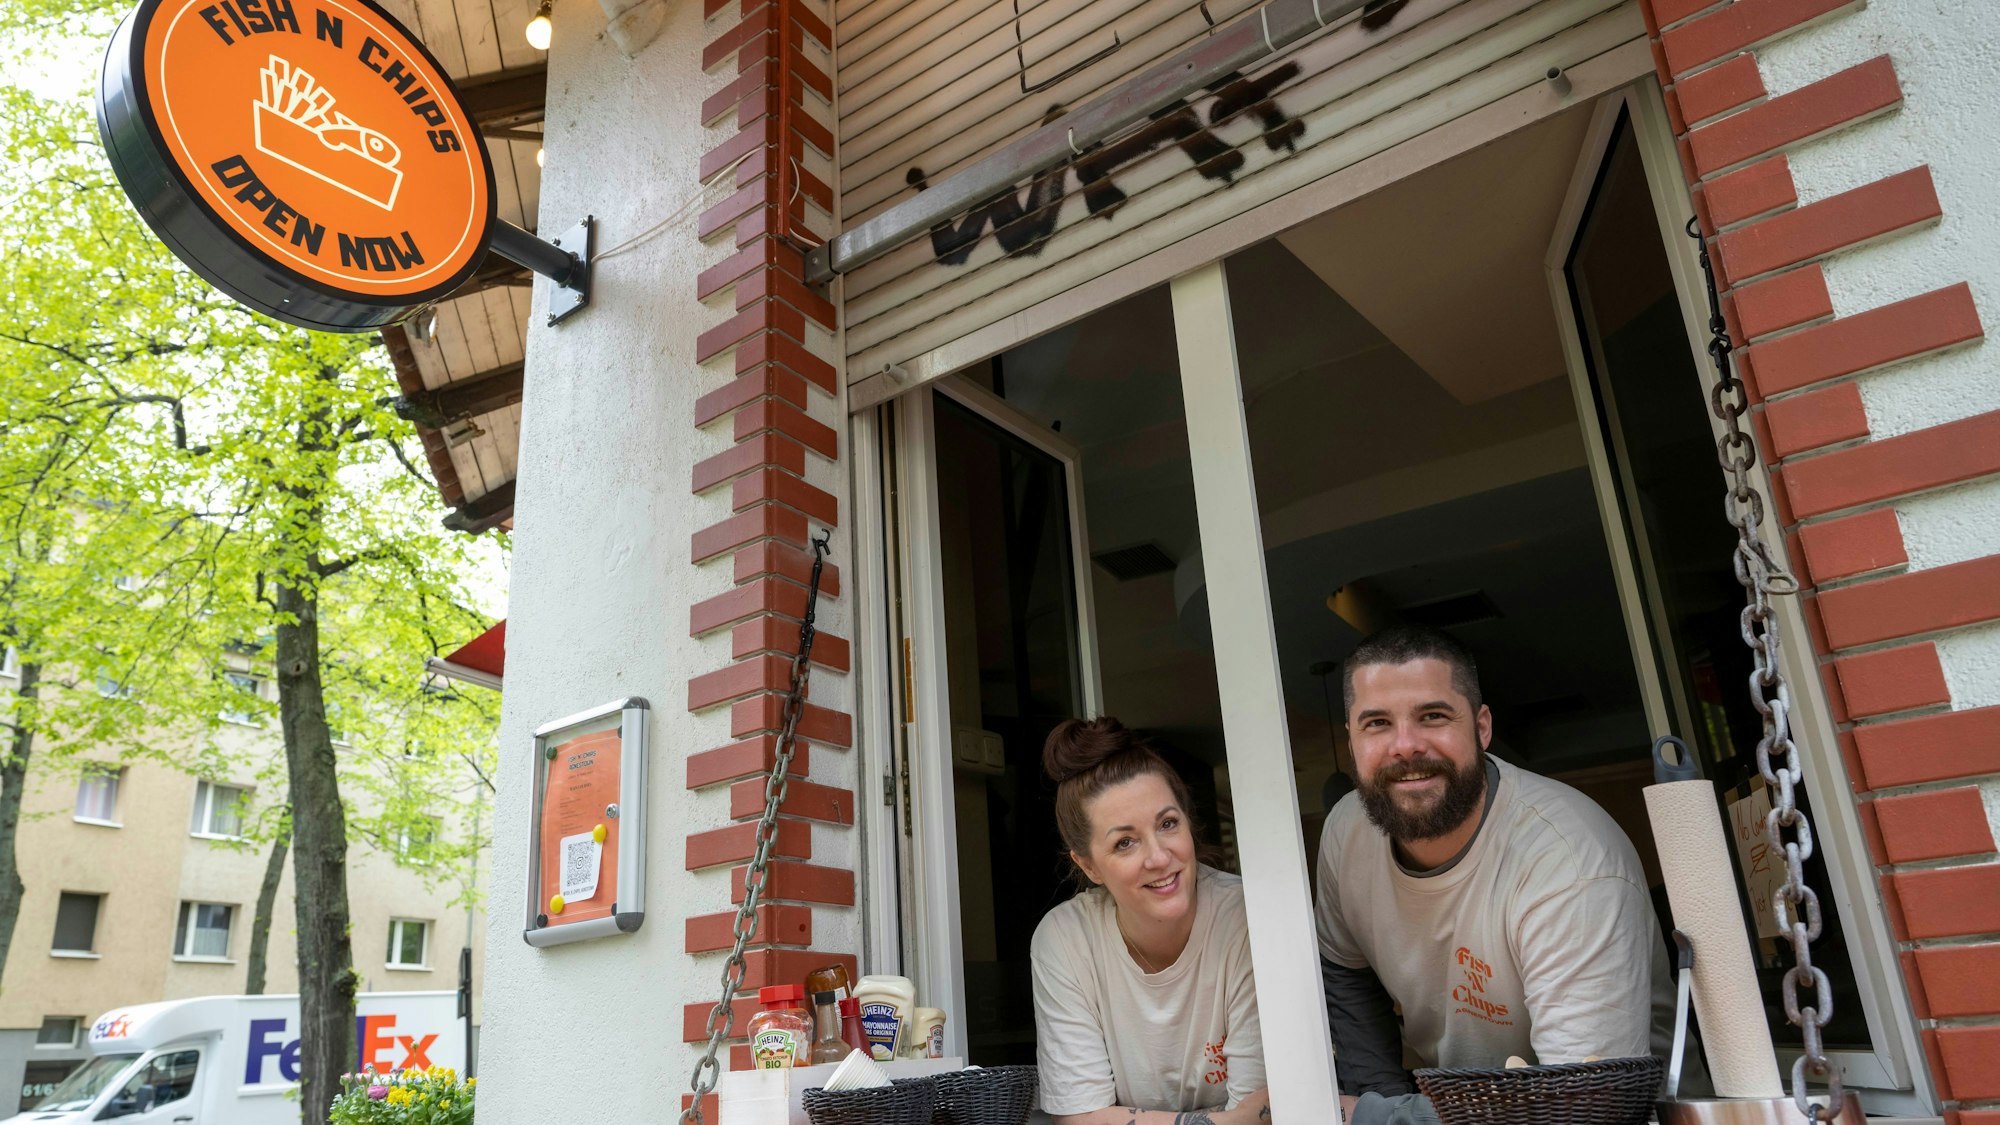 Donnerstags und freitags ist das Fish & Chips-Fenster im Salera geöffnet. Yannik Bürger und seine Frau Beatrix betreiben das spanische Restaurant im Agnesviertel.